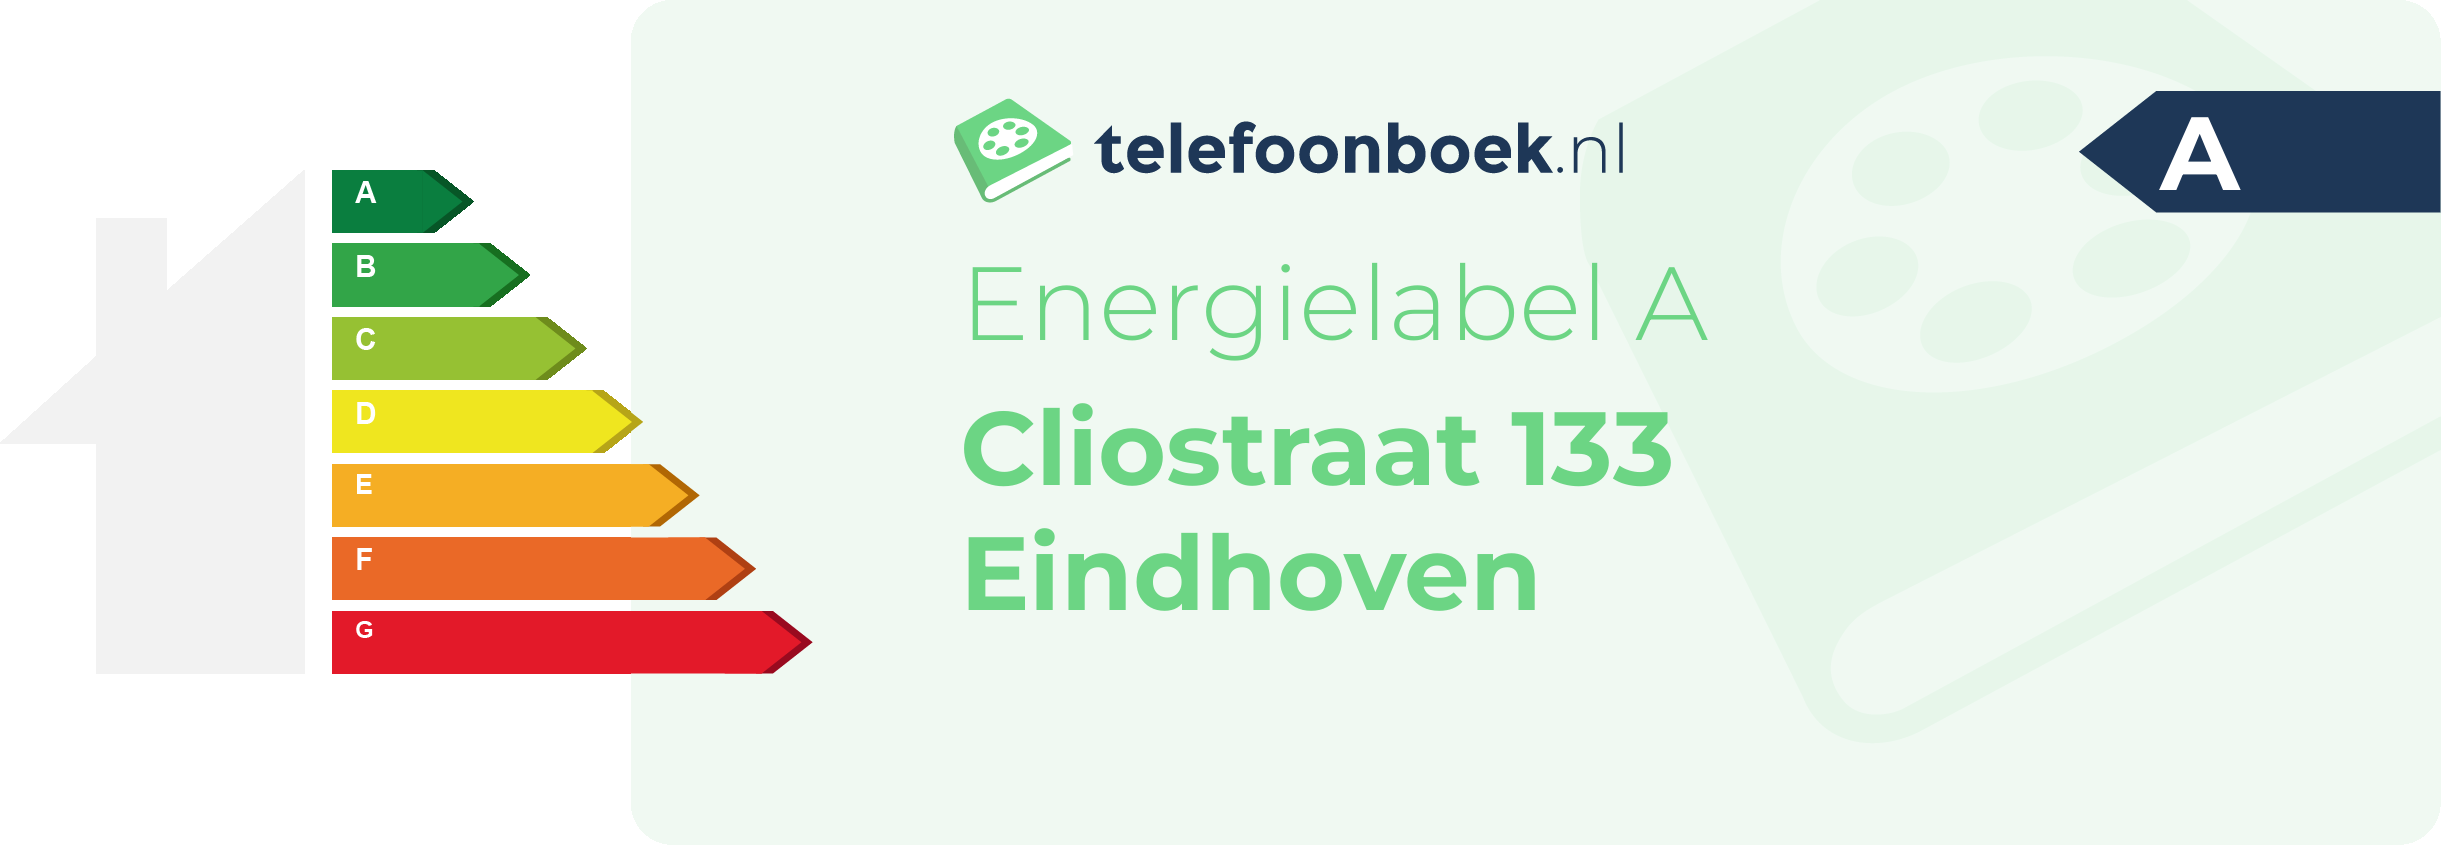 Energielabel Cliostraat 133 Eindhoven